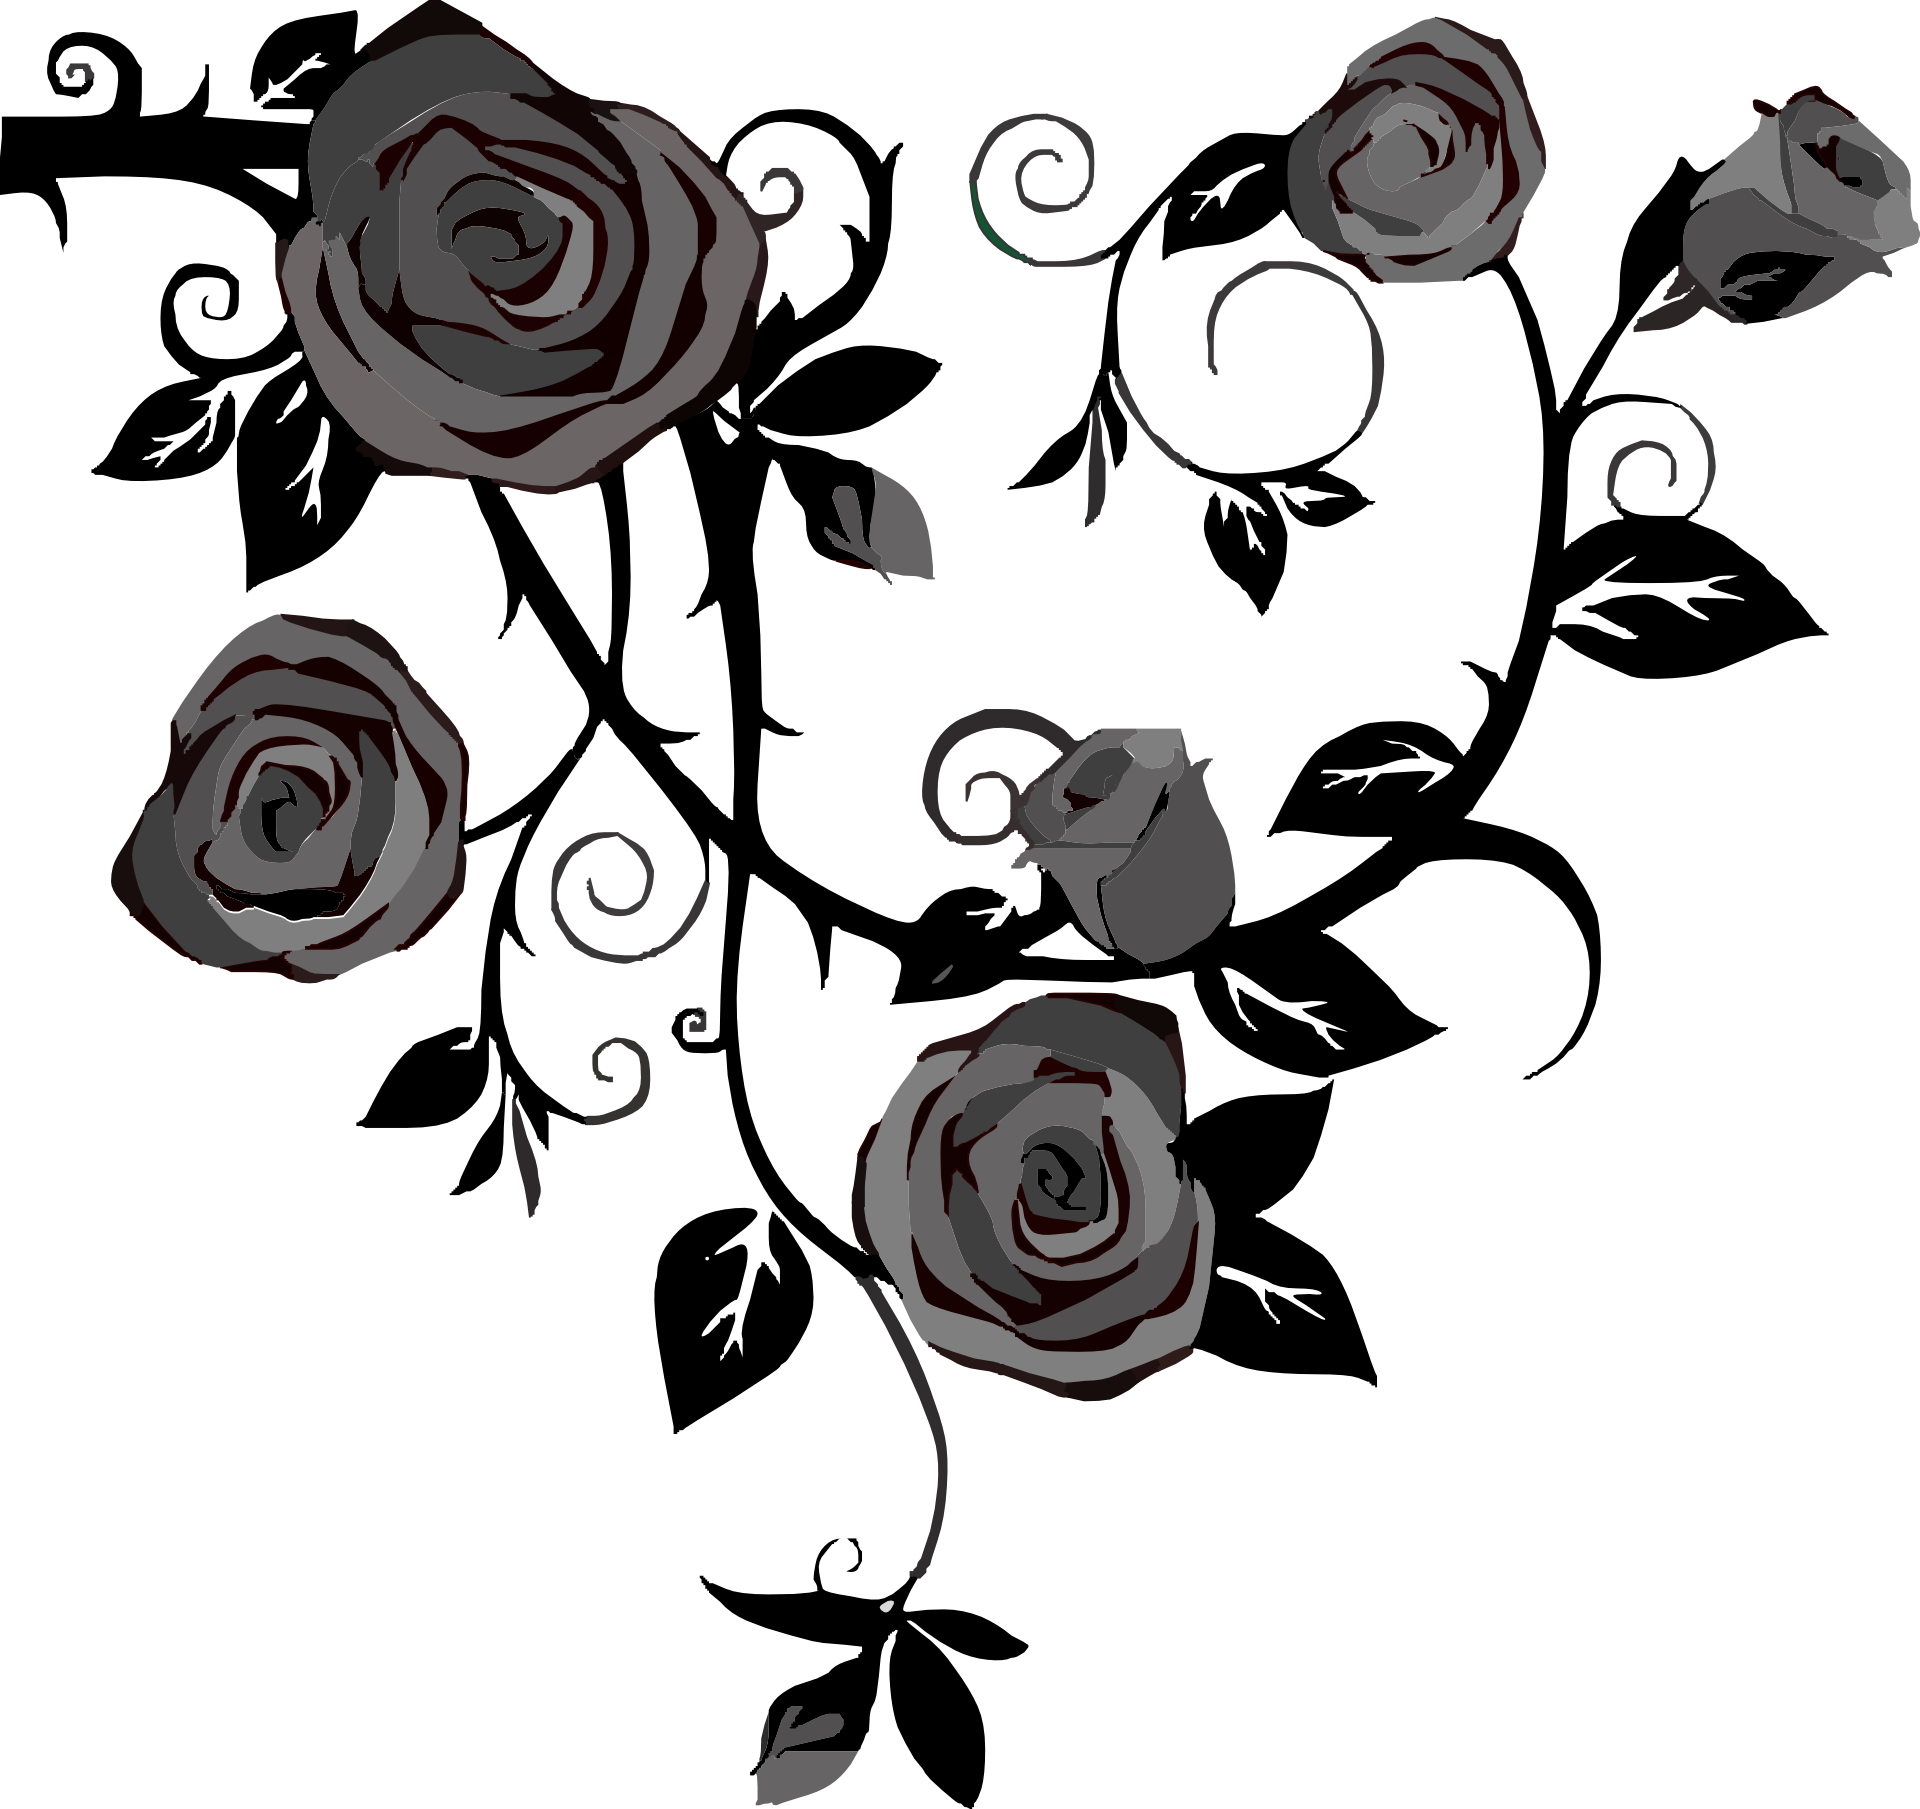 Vektor hitam dan putih Gambar Transparan mawar